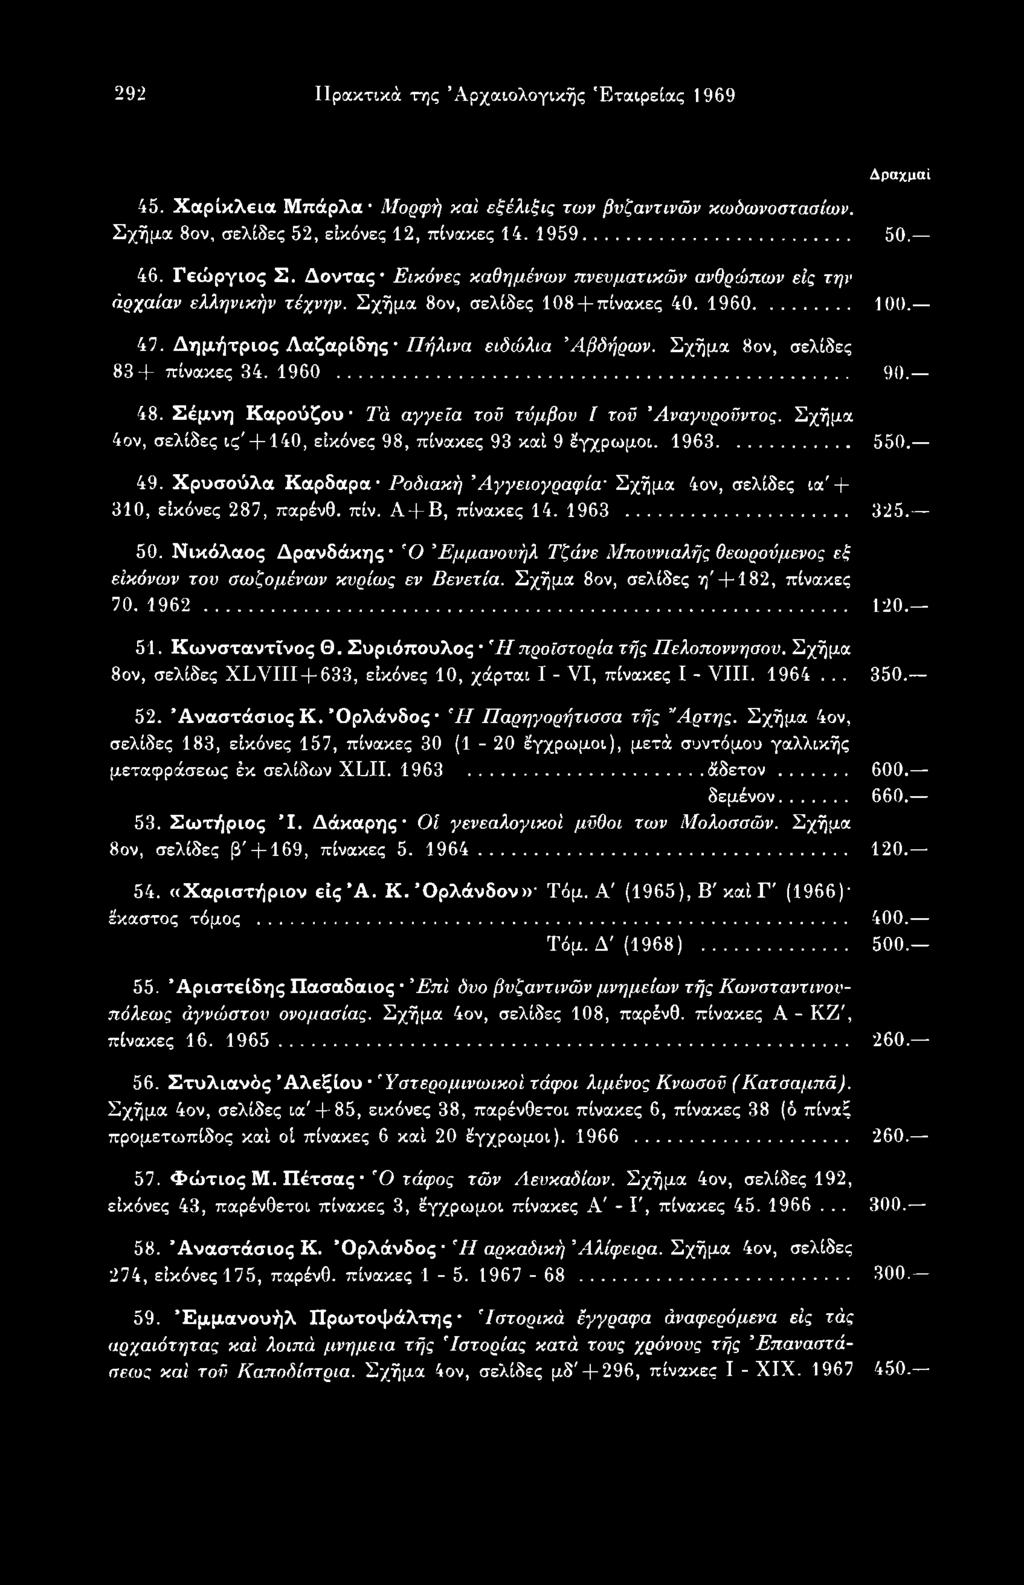 Νικόλαος Δρανδάκης Ό Εμμανουήλ Τζάνε Μποννιαλής θεωρούμενος εξ εικόνων του σωζομένων κυρίως εν Βενετία. Σχήμα 8ον, σελίδες η'+ 182, πίνακες 70. 1962... 120. 51. Κωνσταντίνος Θ.